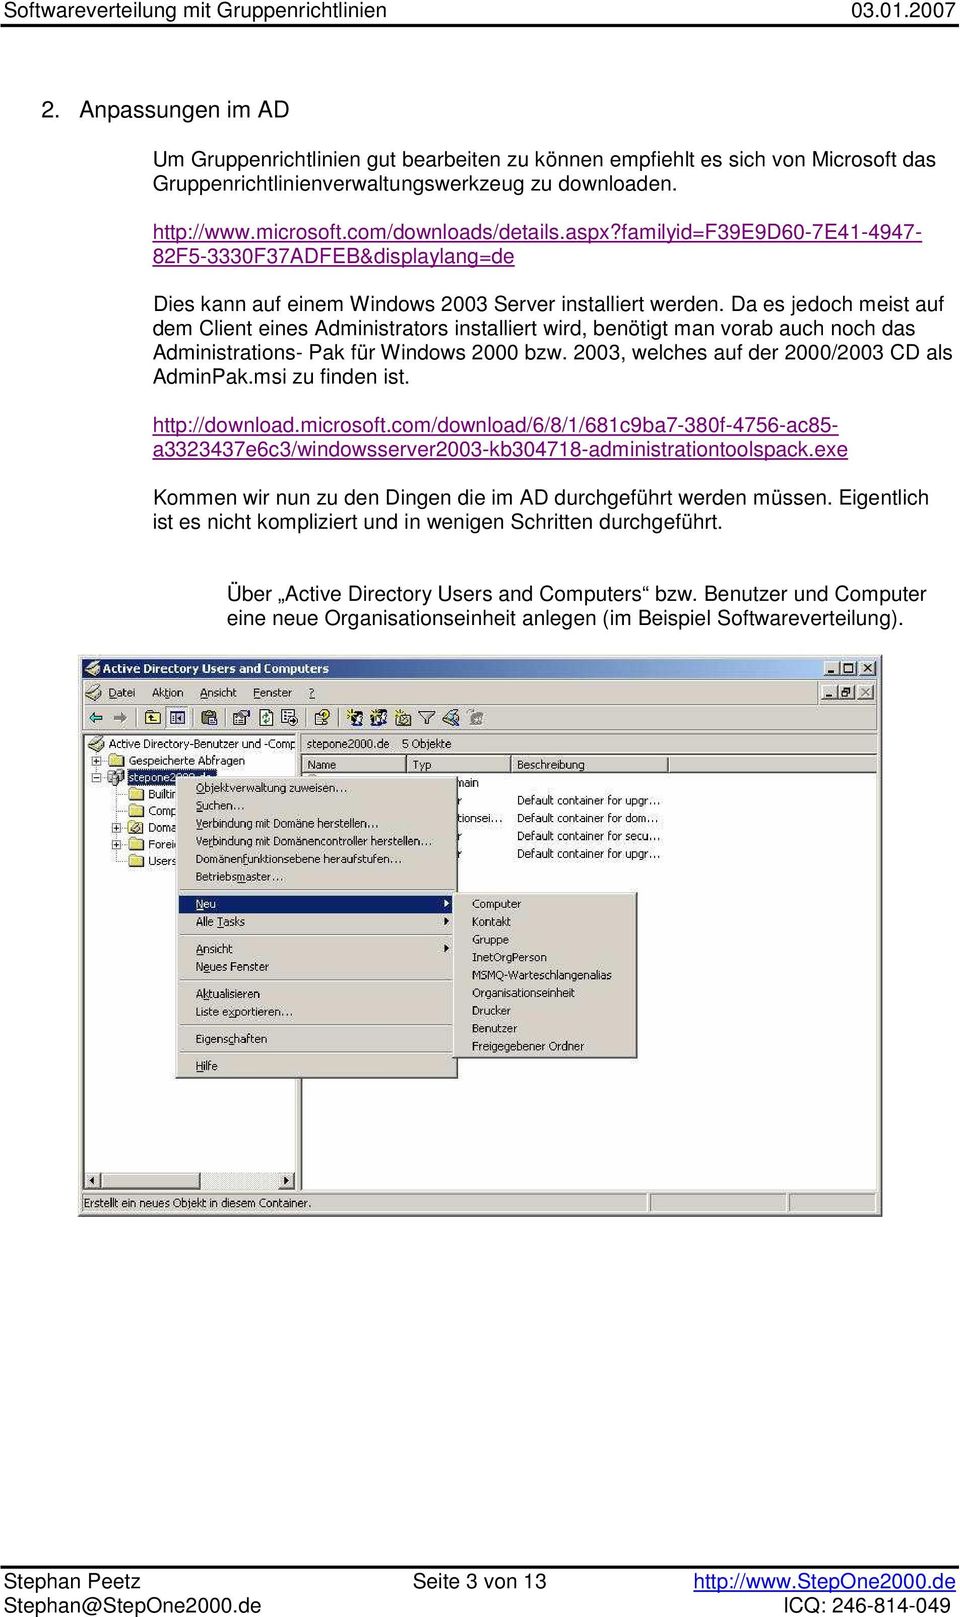 Da es jedoch meist auf dem Client eines Administrators installiert wird, benötigt man vorab auch noch das Administrations- Pak für Windows 2000 bzw. 2003, welches auf der 2000/2003 CD als AdminPak.